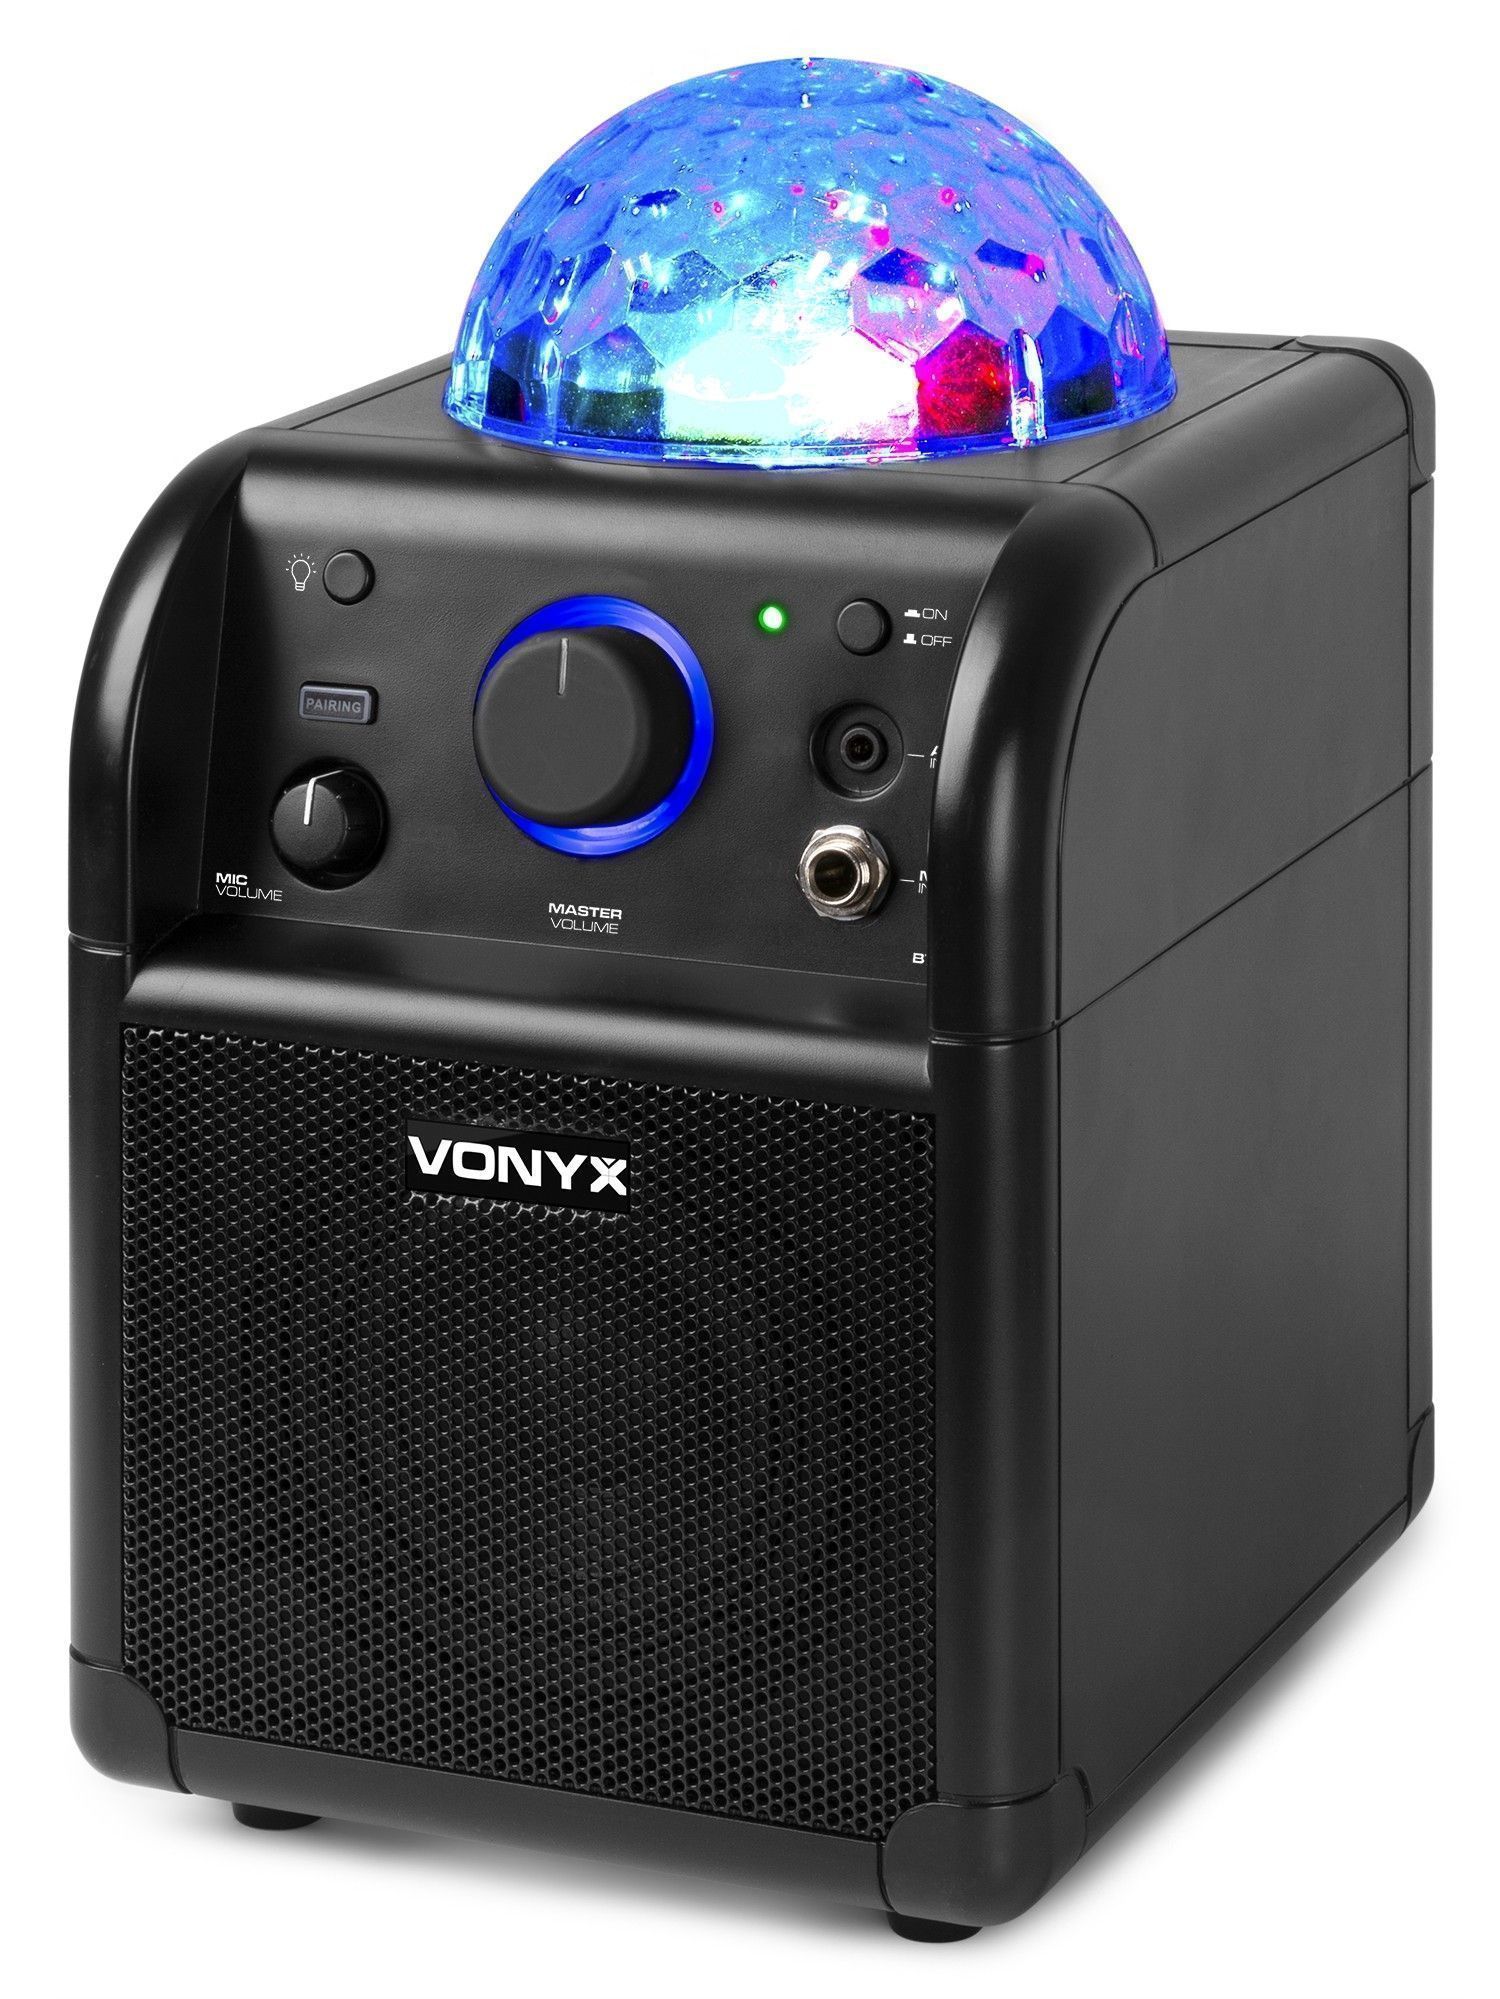 Vonyx blue retourdeals karaokesets|retourdeals karaoke microfoons|retourdeals actieve speakers|retourdeals complete geluidsinstallaties|retourdeals mobiele geluidsinstallaties|karaokesets